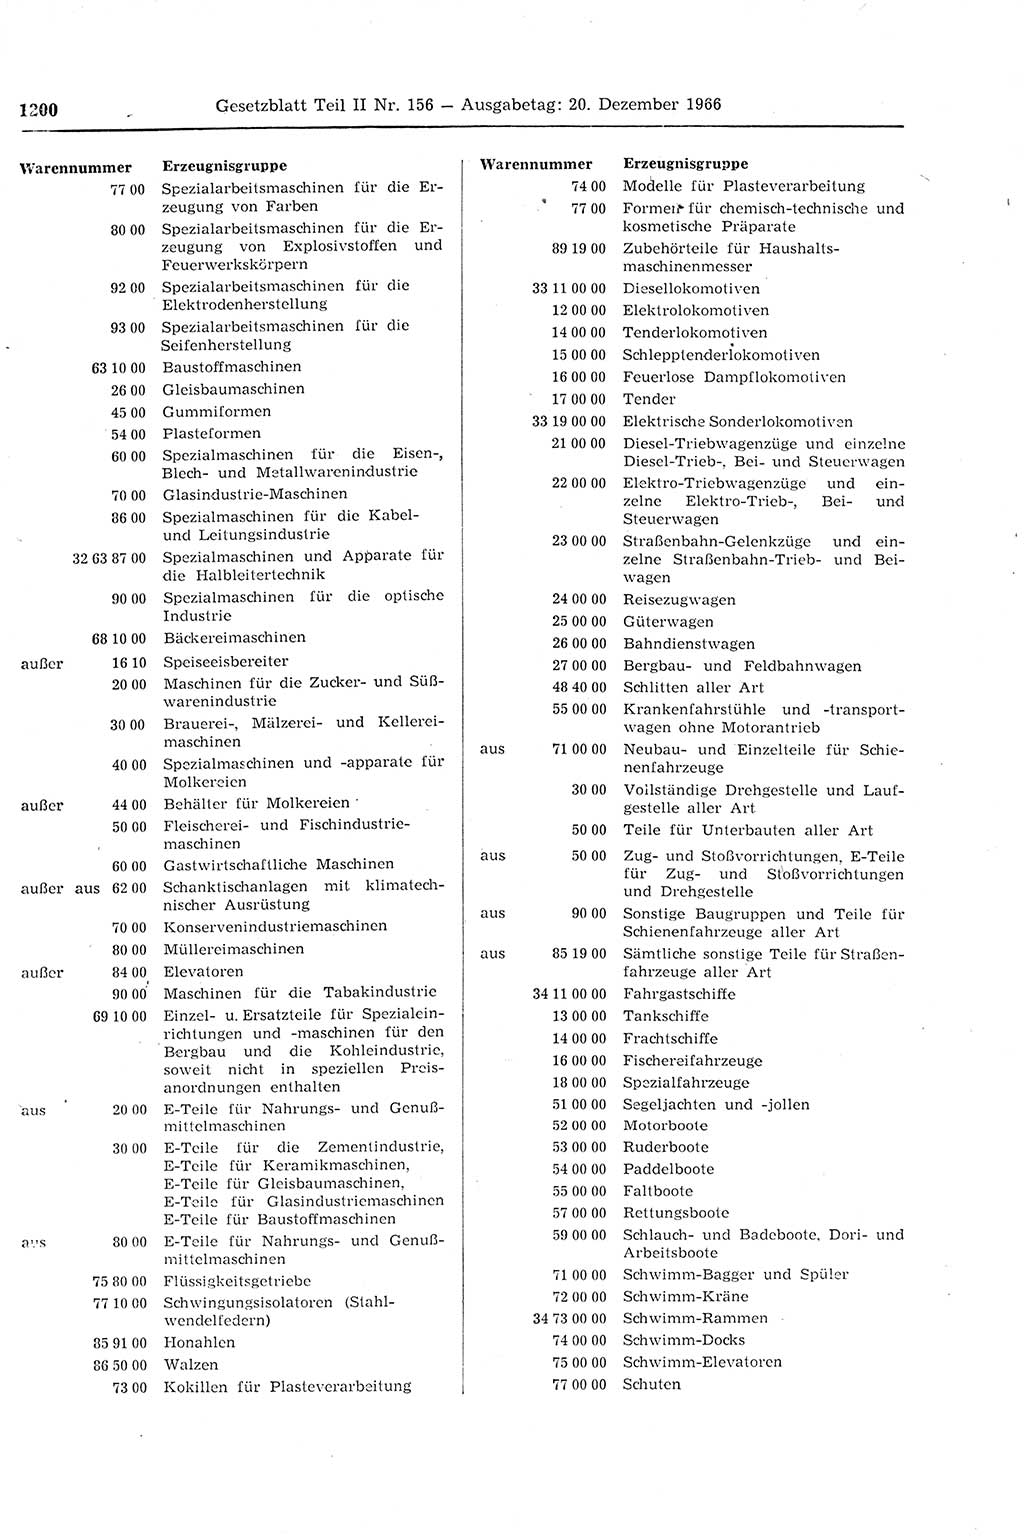 Gesetzblatt (GBl.) der Deutschen Demokratischen Republik (DDR) Teil ⅠⅠ 1966, Seite 1200 (GBl. DDR ⅠⅠ 1966, S. 1200)